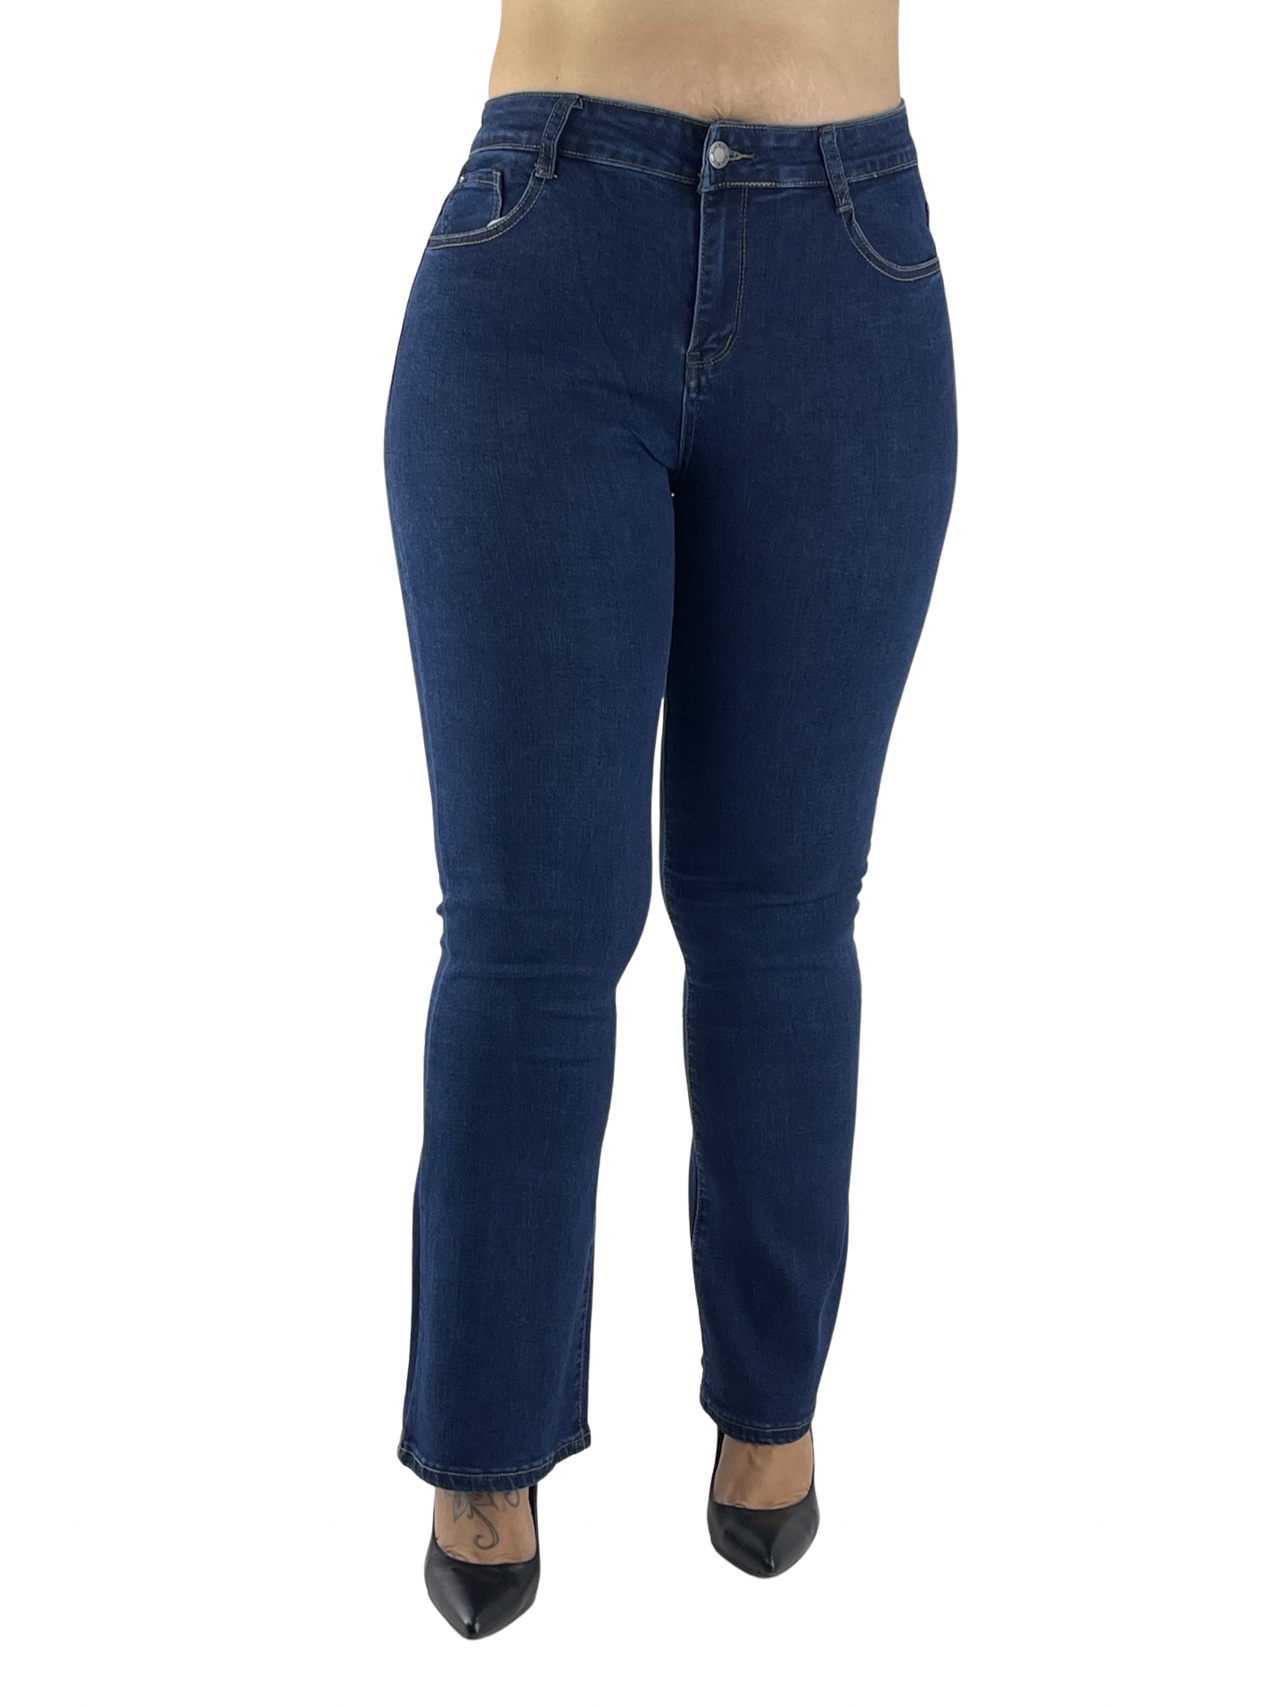 Παντελόνι τζιν γυναικείο ελαστικό κωδ. MG2767 μπροστινή όψη